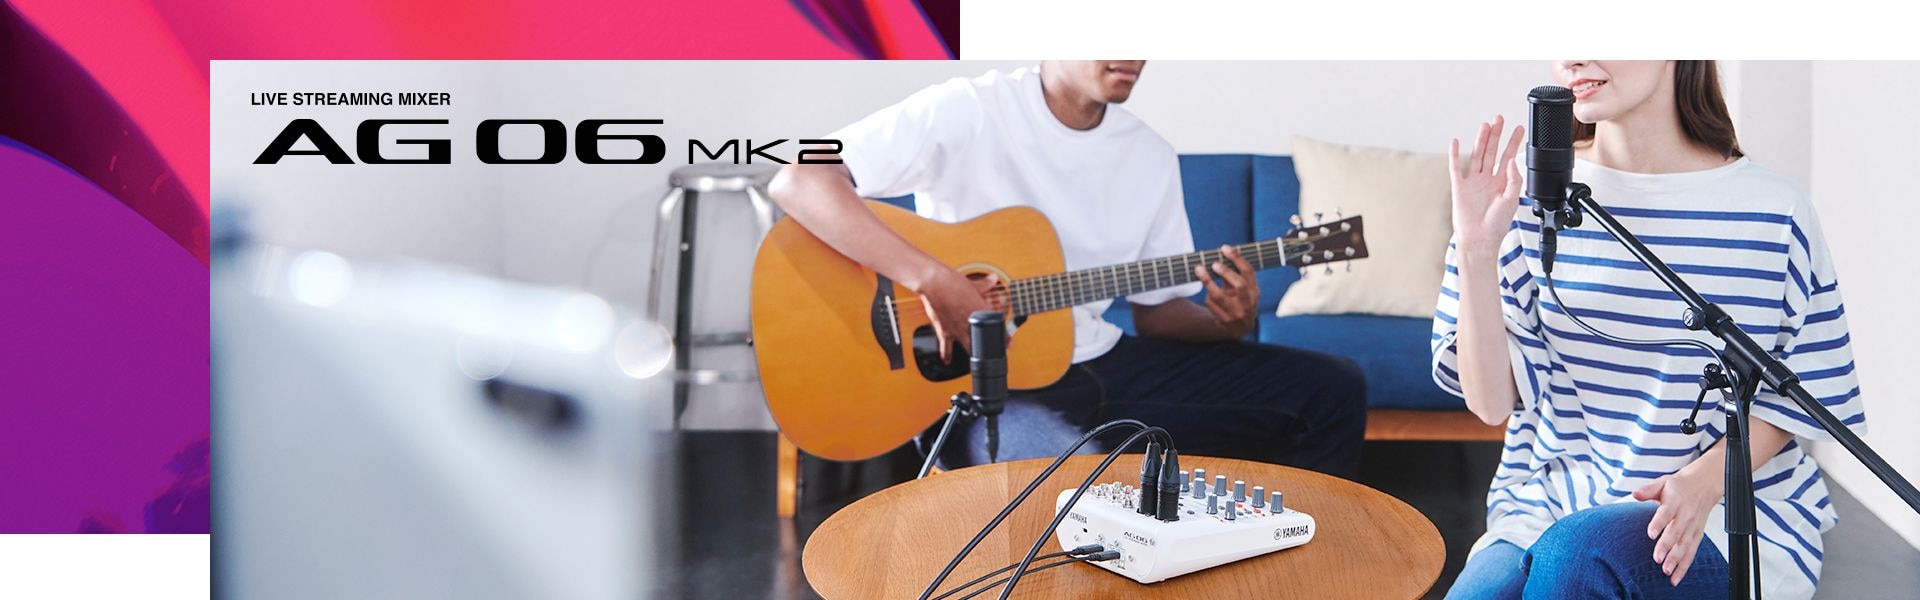 Yamaha Live Streaming Mixer AG06MK2